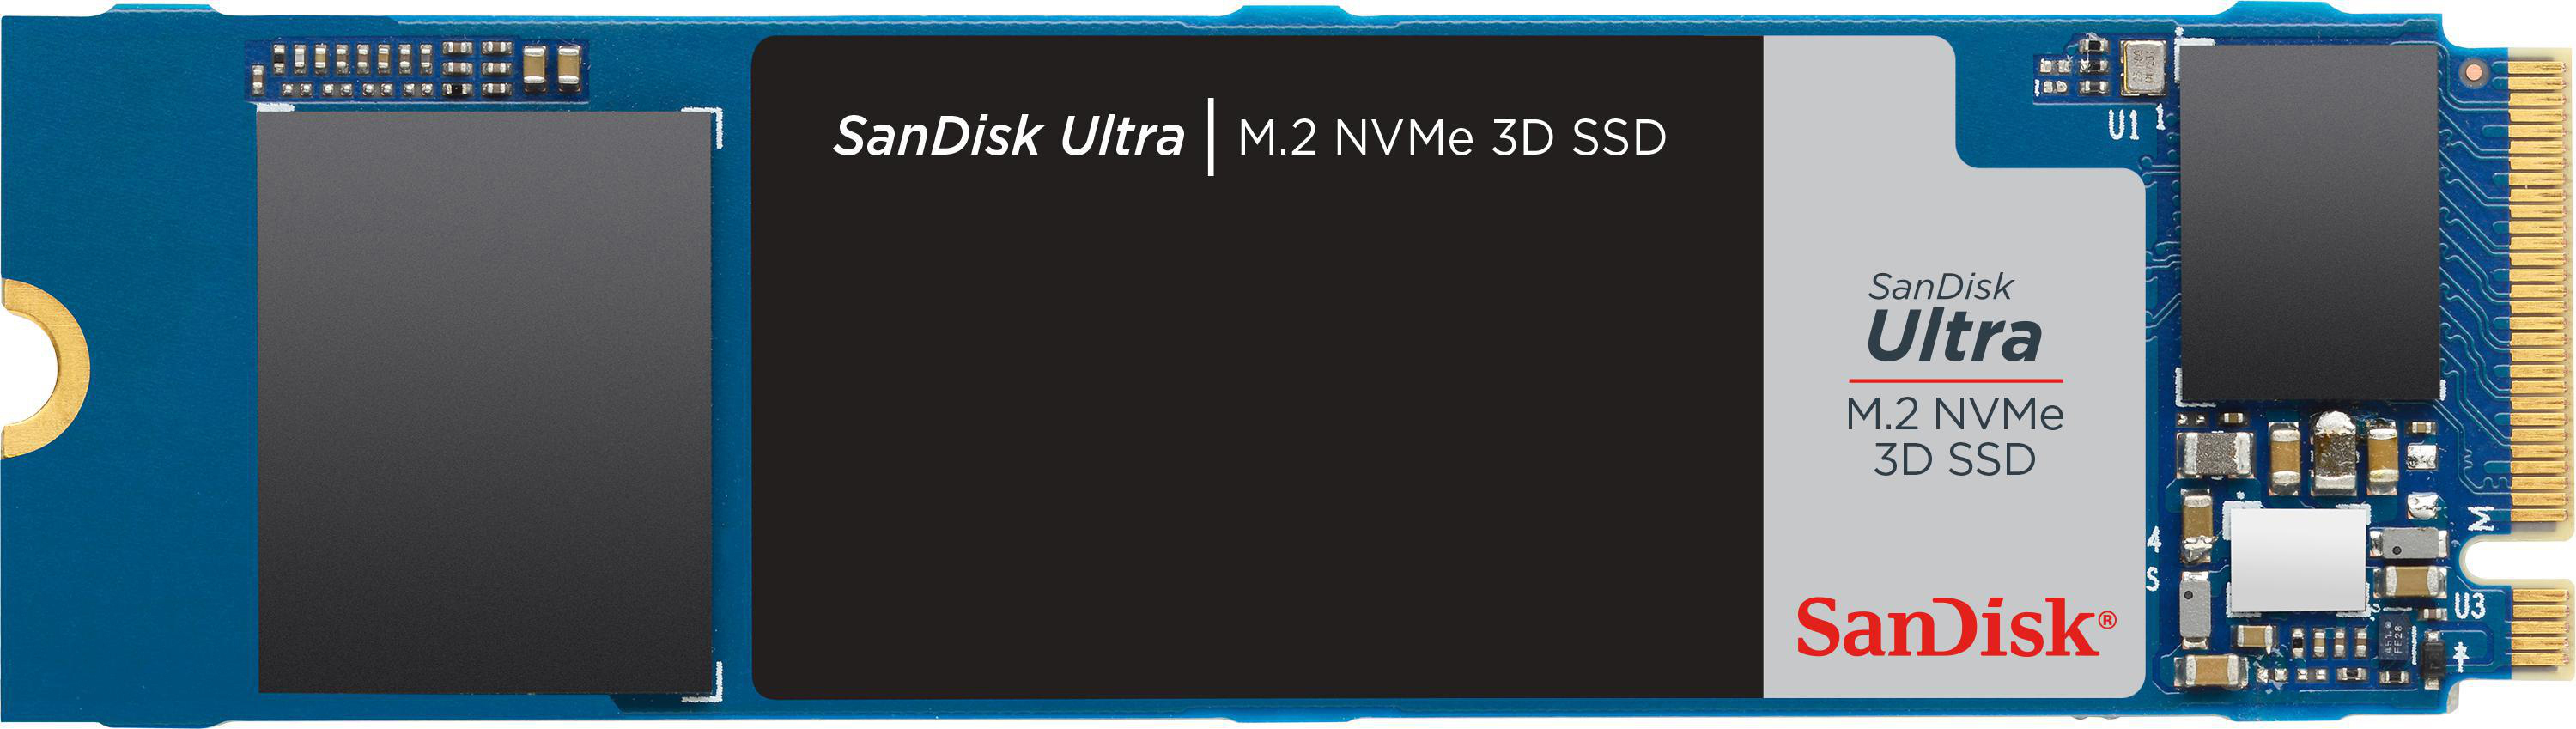 SANDISK Ultra 3D SSD Speicher, NVMe, Speicher 500 GB intern via Interner M.2